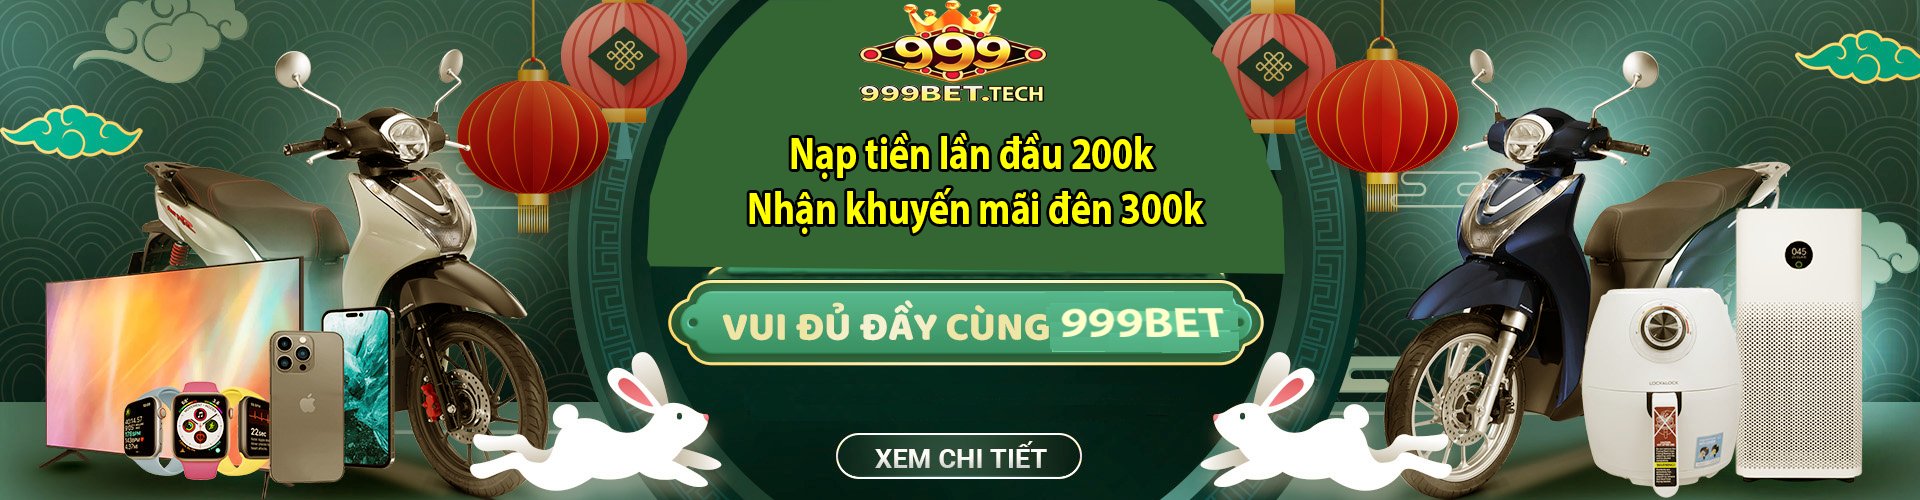 banner 999bet